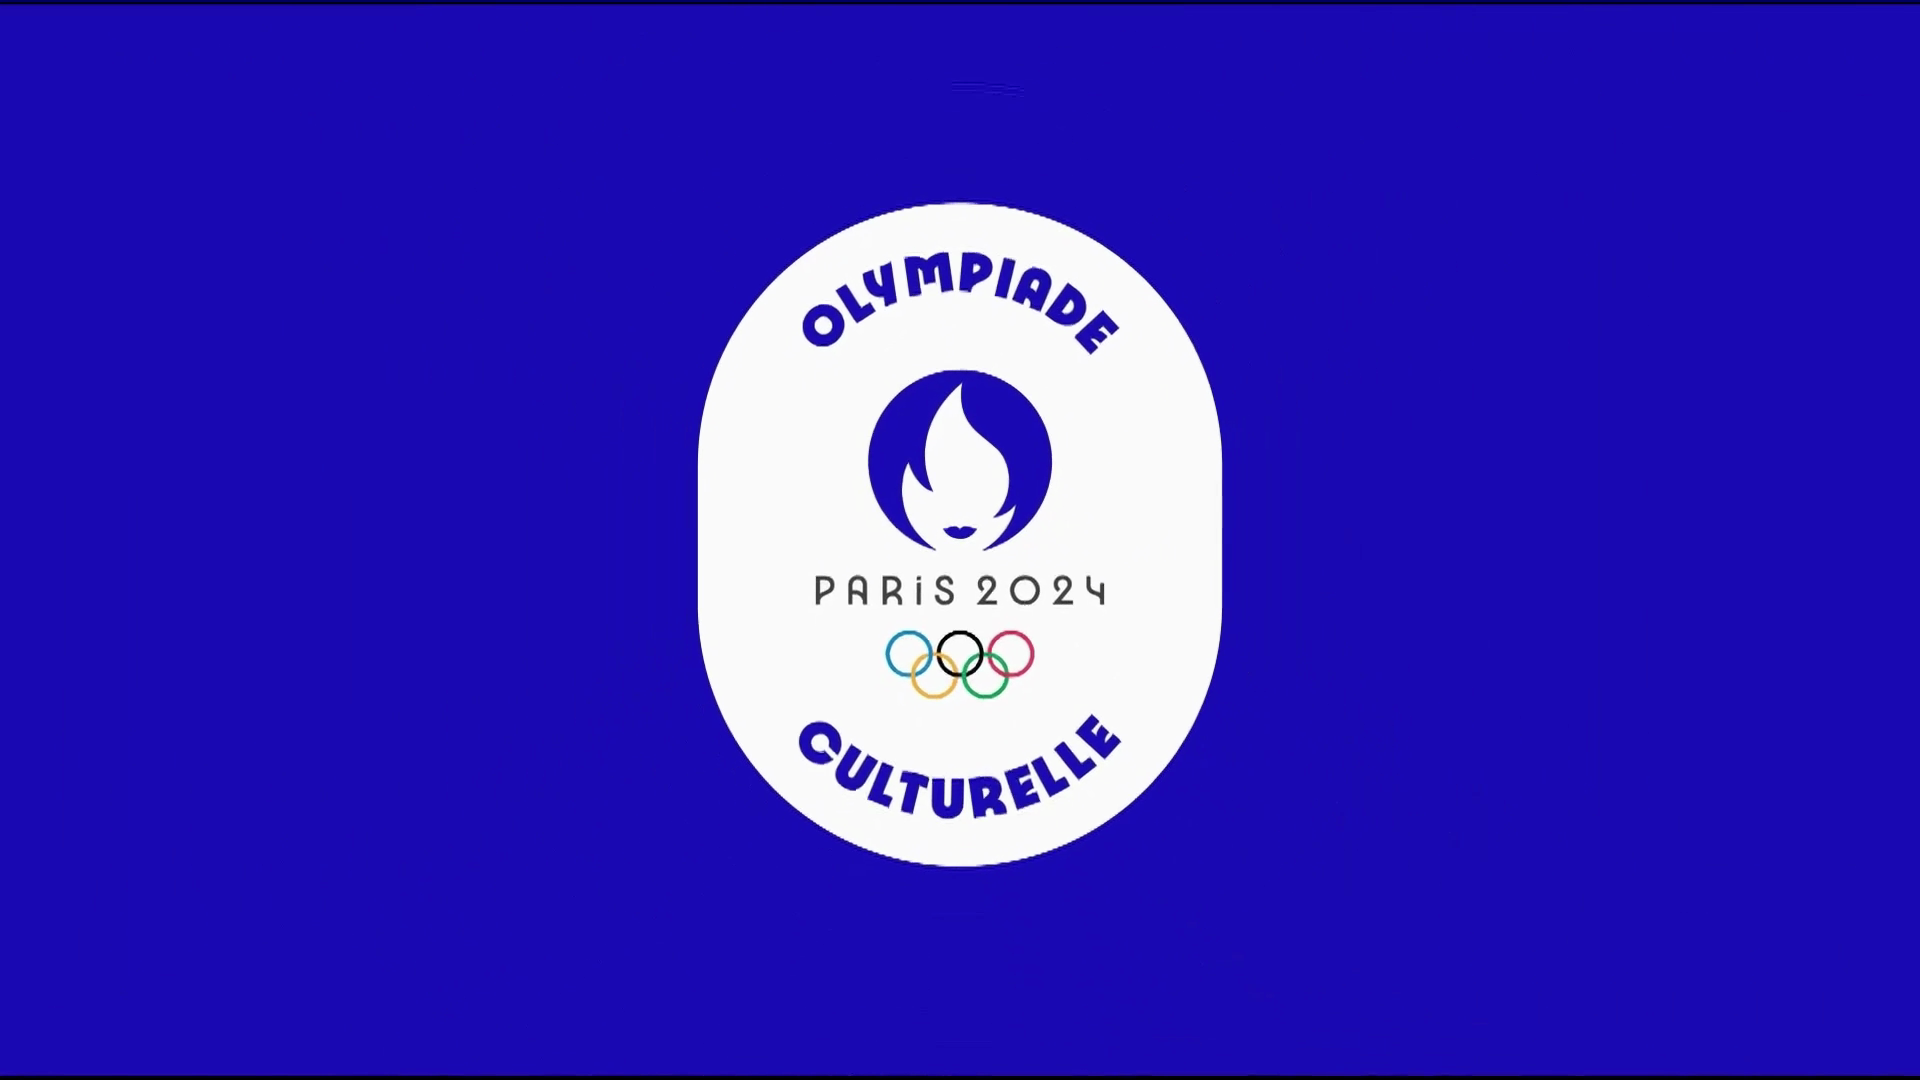 Vidéo Générique Avant Programme Paris 2024 Olympiade Culturelle Culturebox 2023 7395